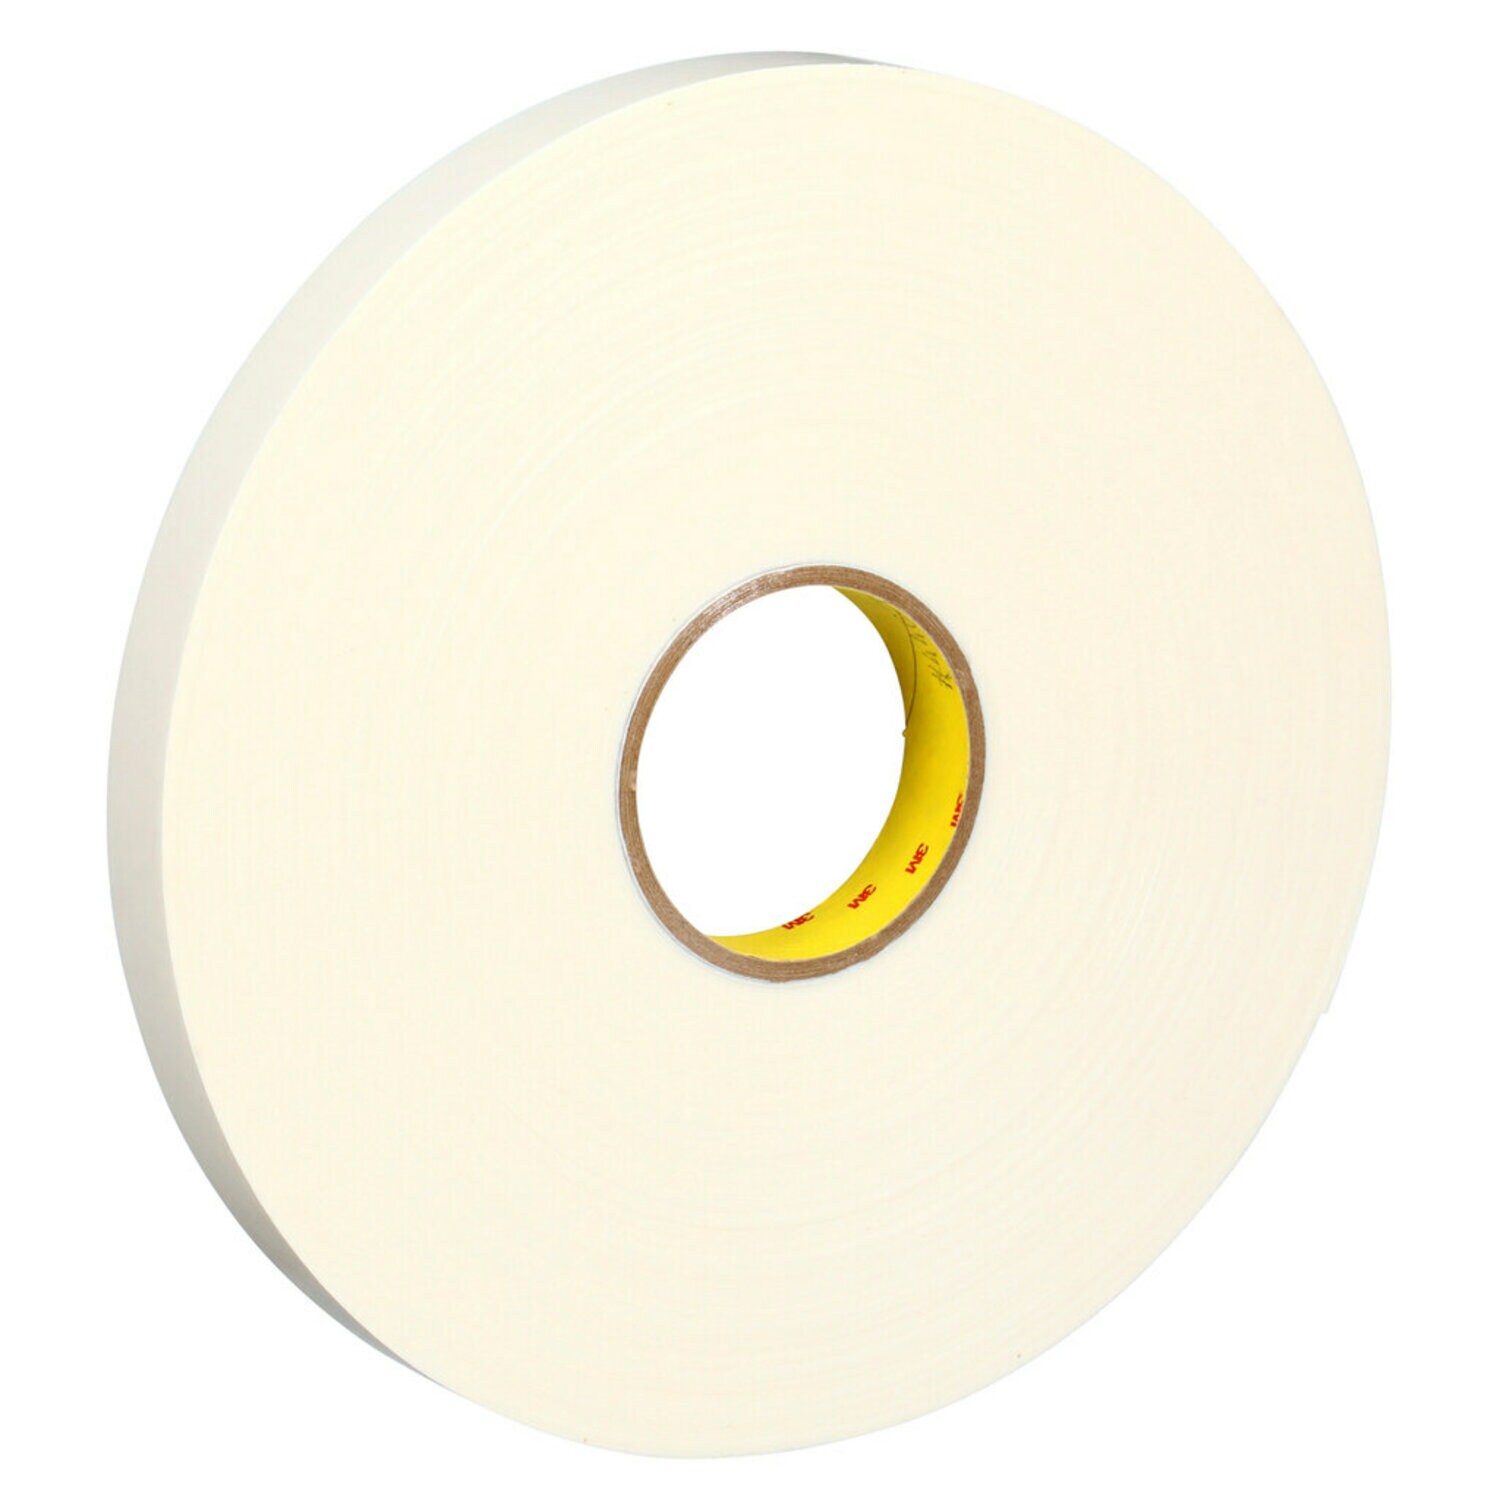 7000123603 - 3M Double Coated Polyethylene Foam Tape 4462, White, 1 in x 72 yd, 31
mil, 9 rolls per case